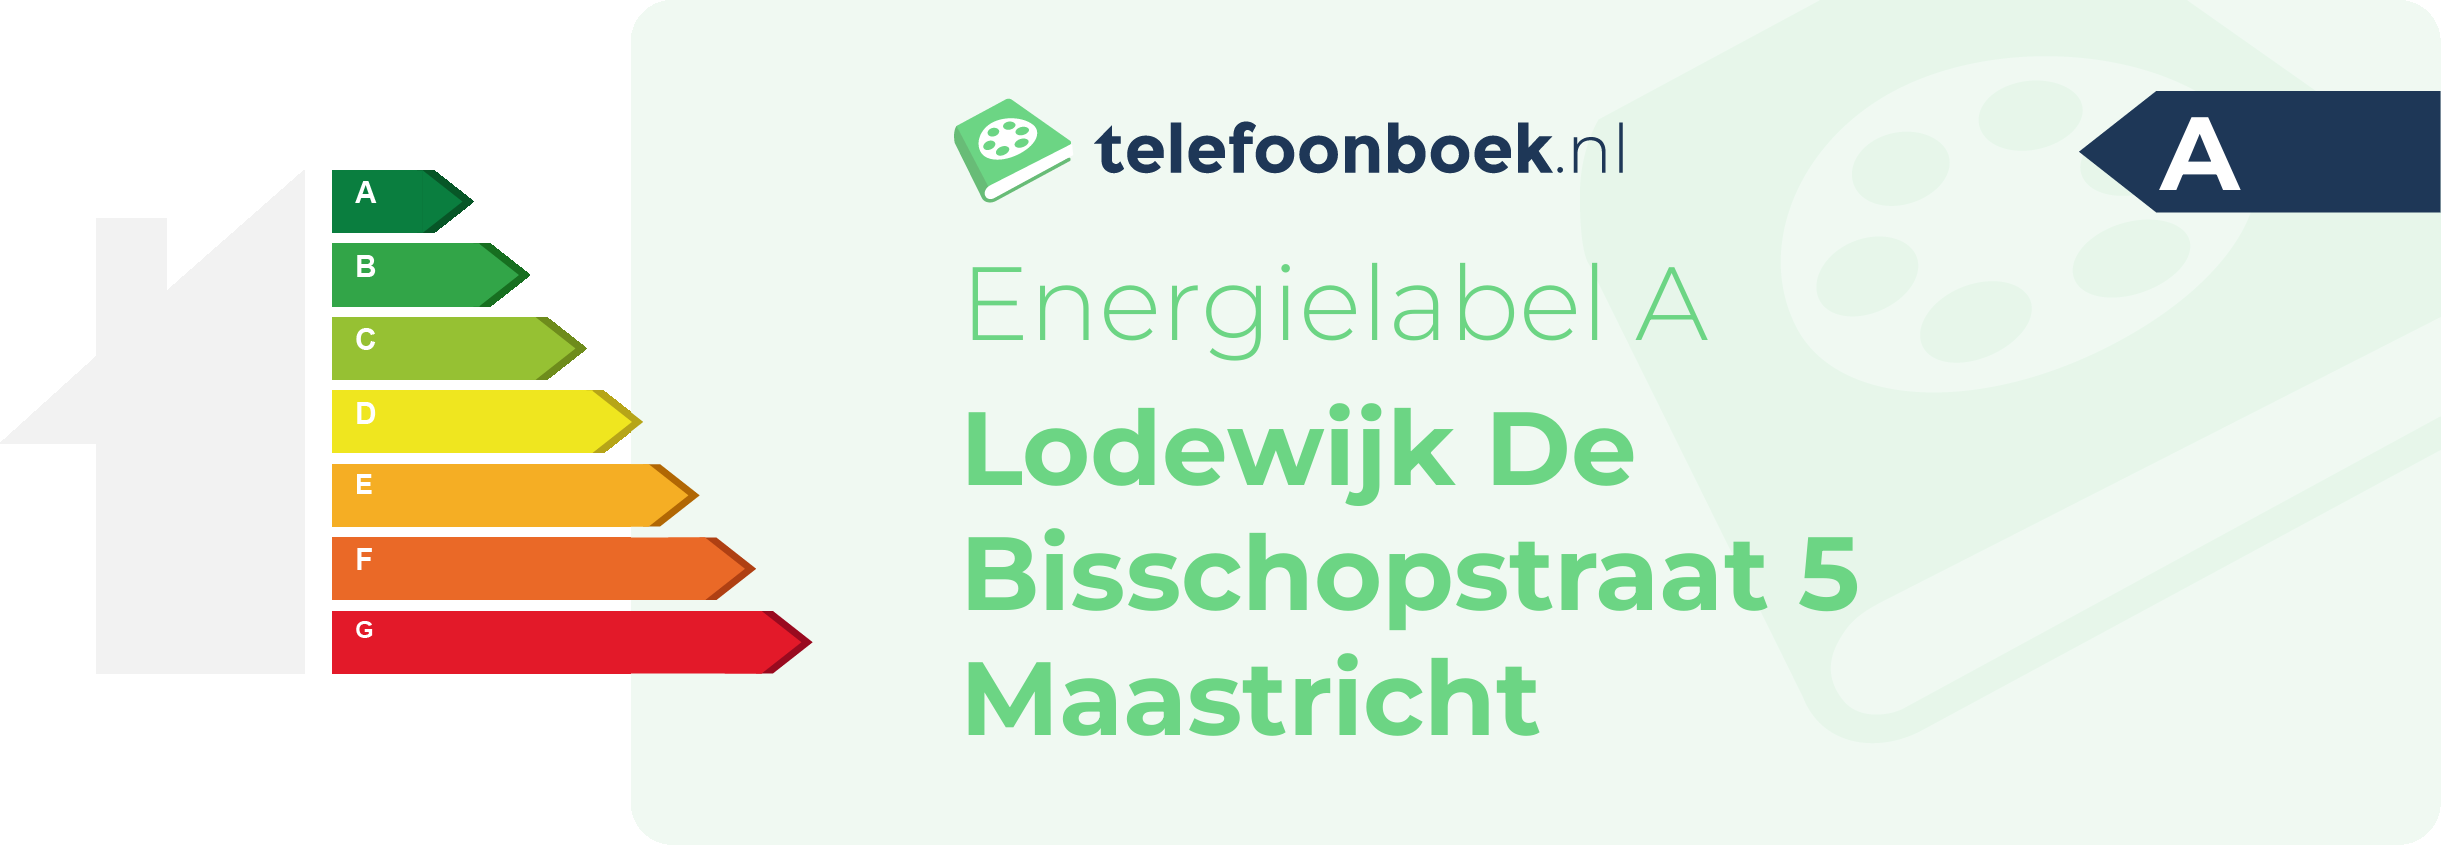 Energielabel Lodewijk De Bisschopstraat 5 Maastricht